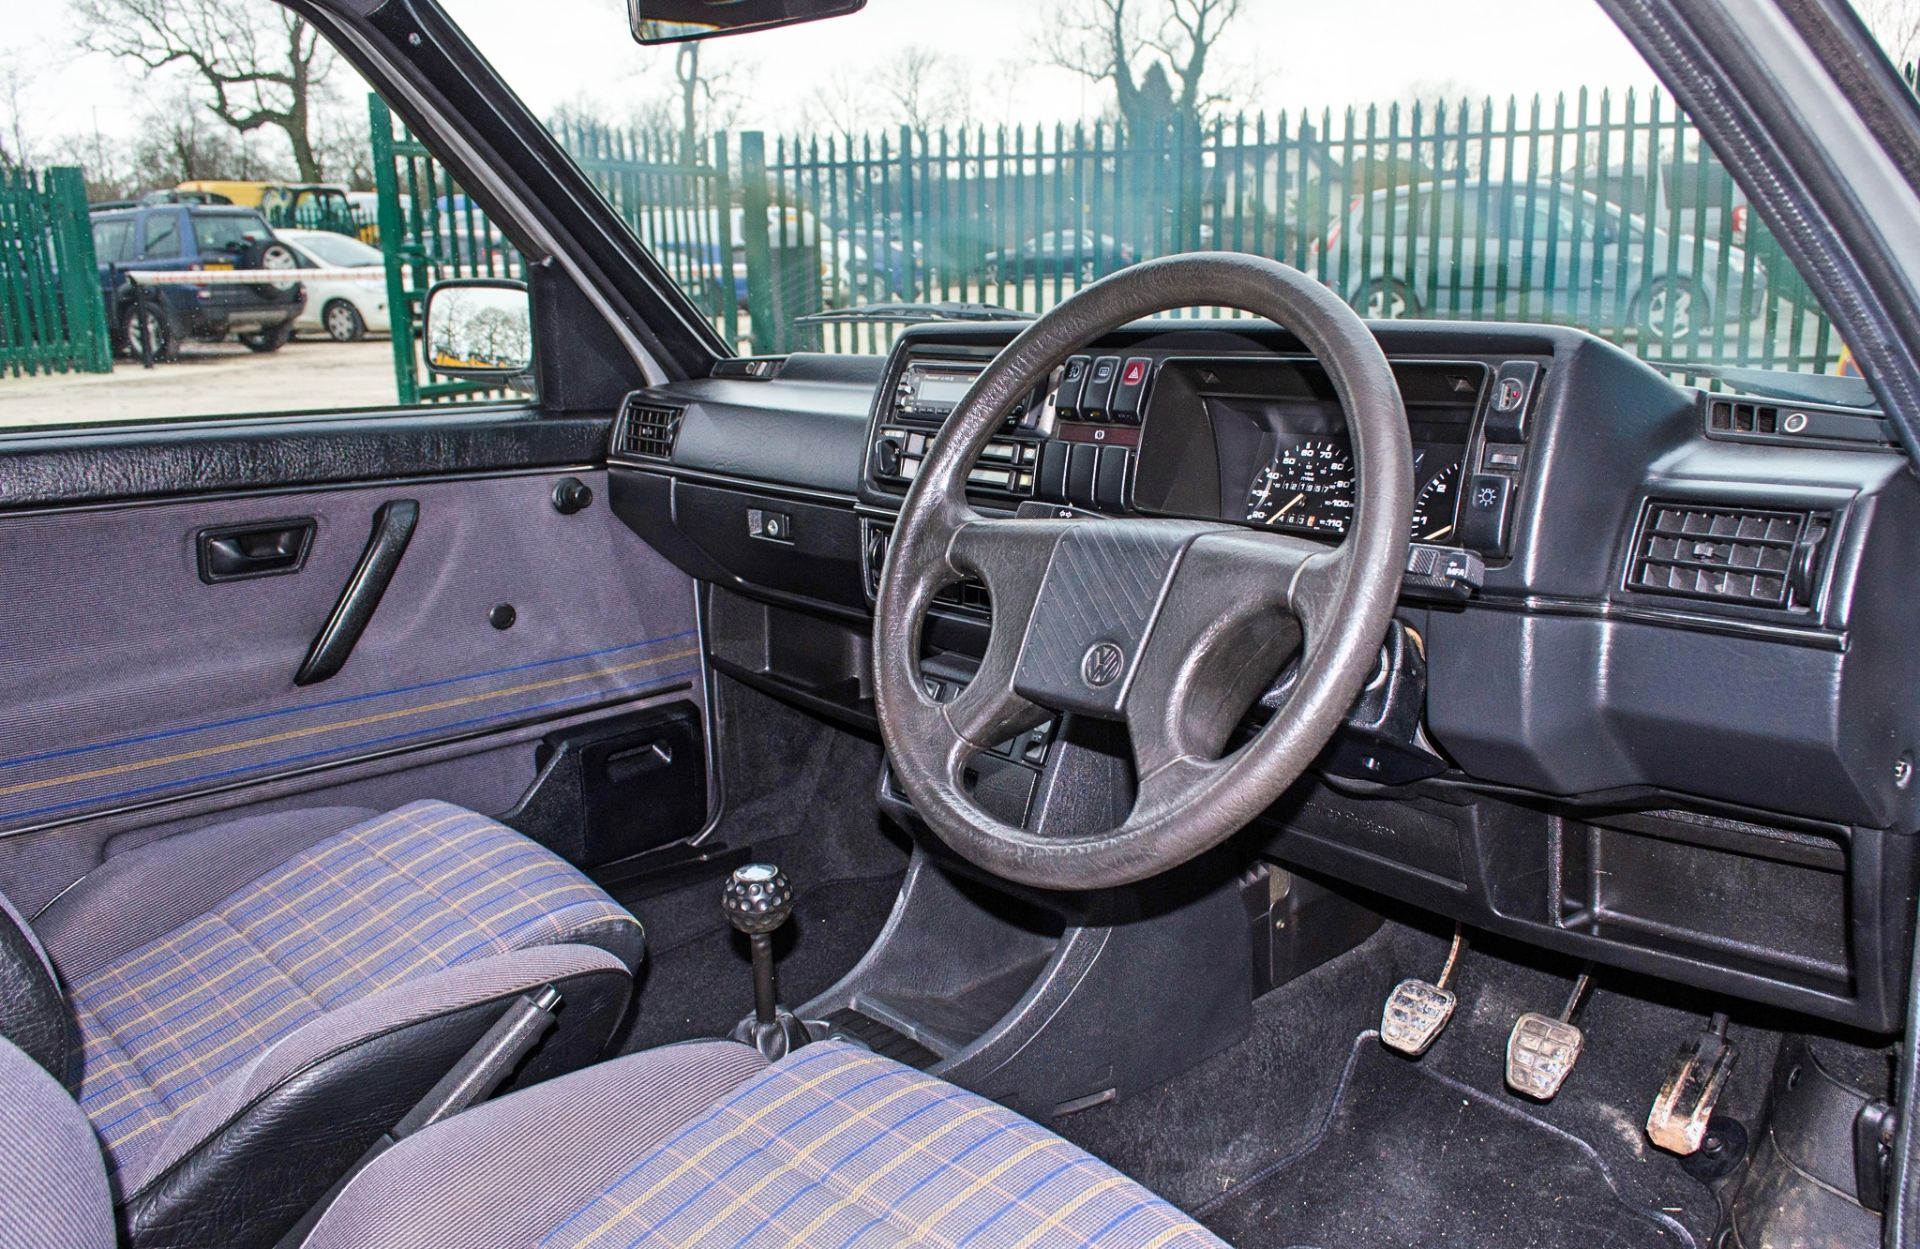 1989 Volkswagen Golf GTI 1.8 litre 3 door hatchback - Image 27 of 52